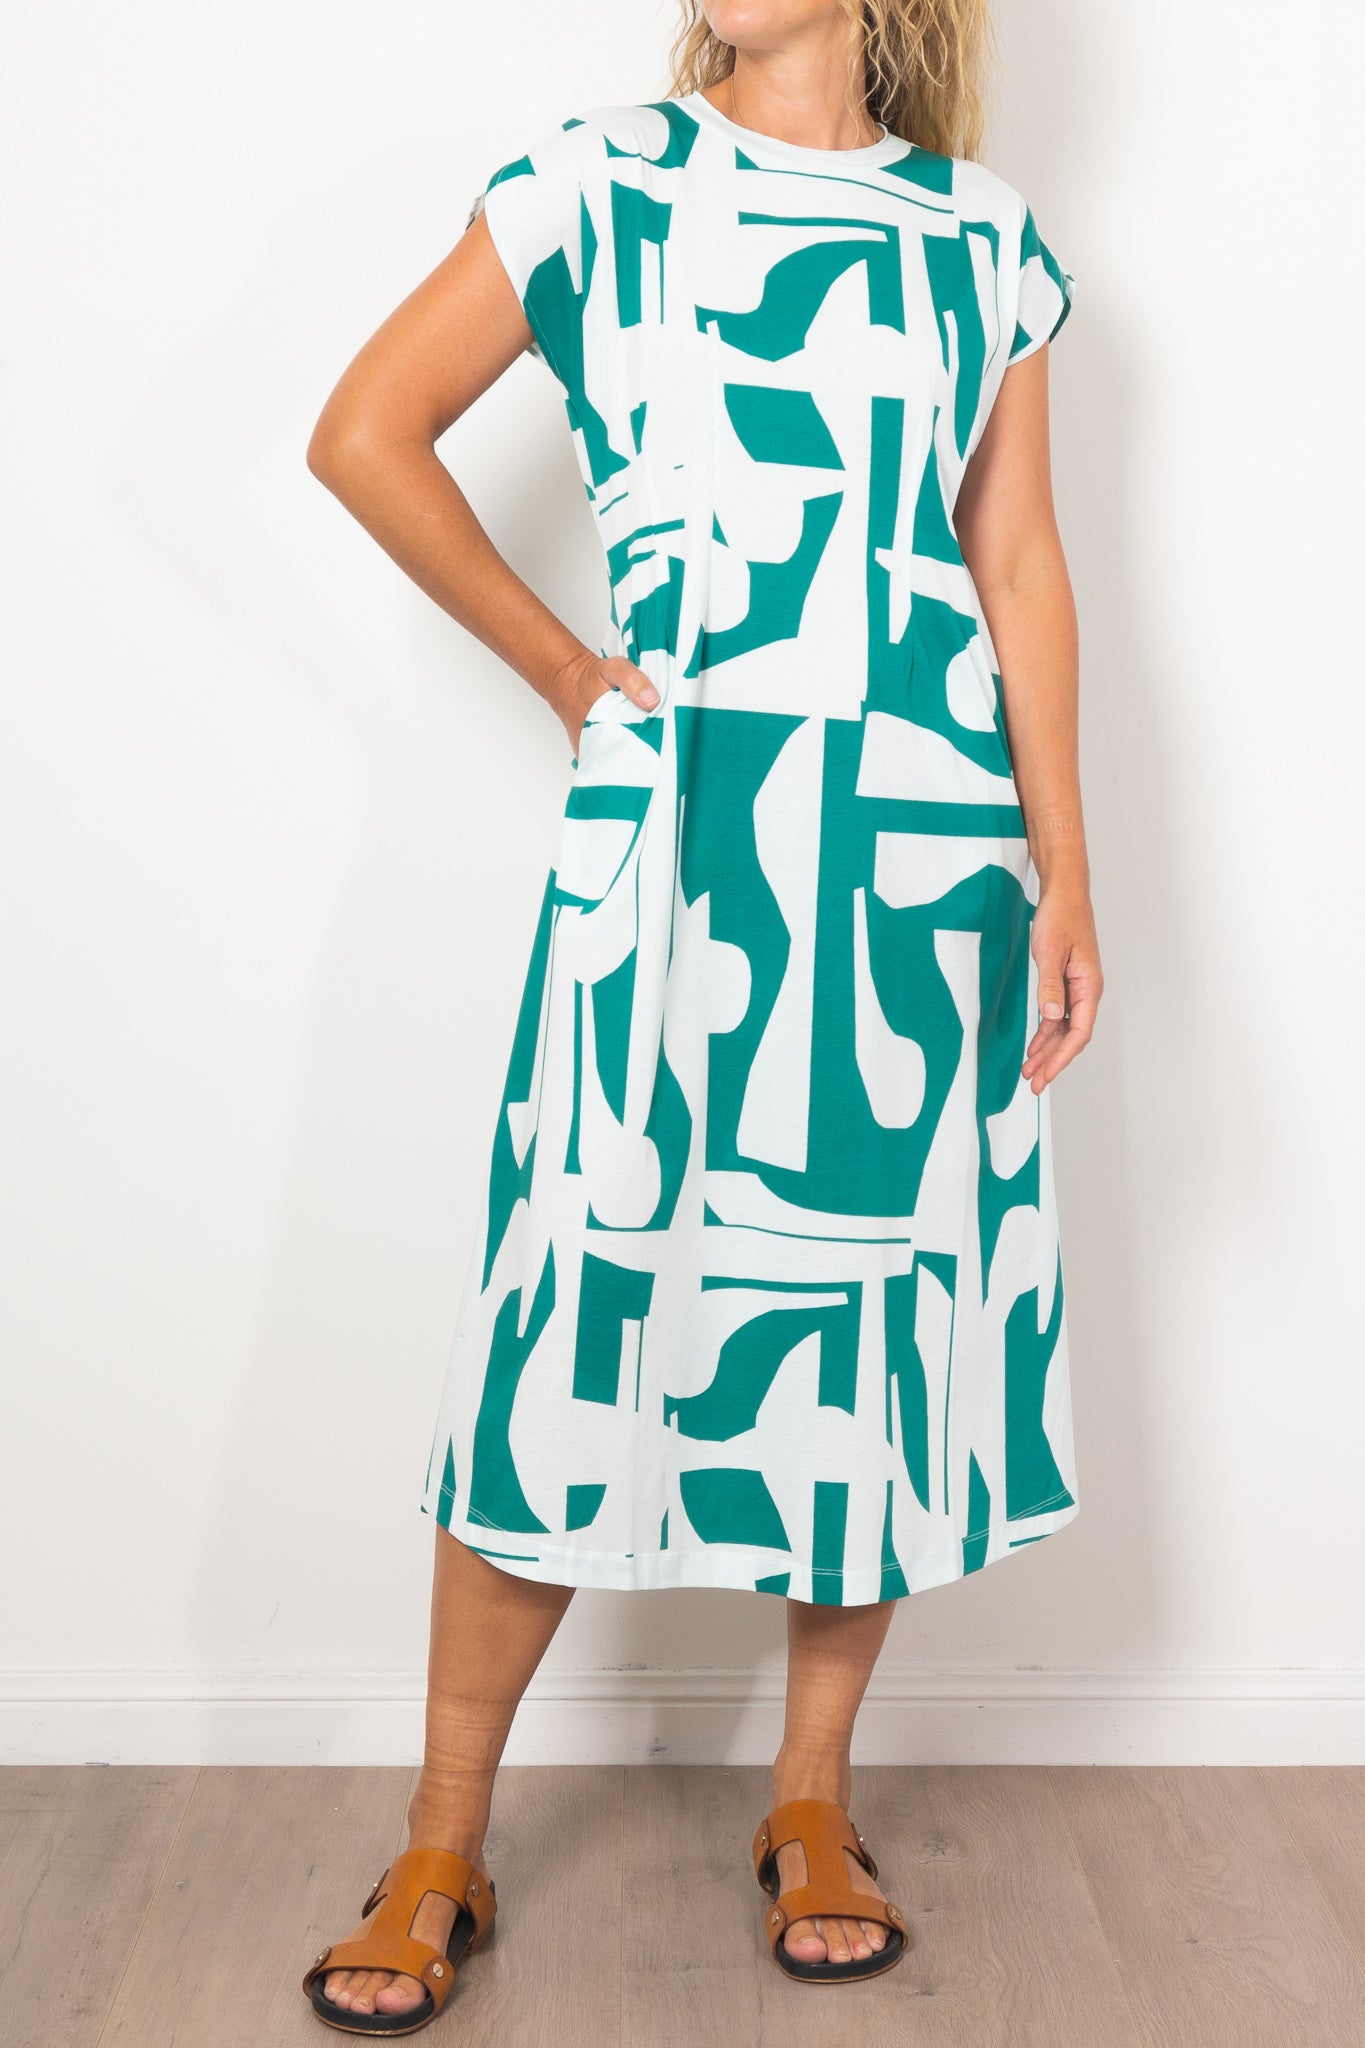 ELK Joia Braque Print Jersey Dress